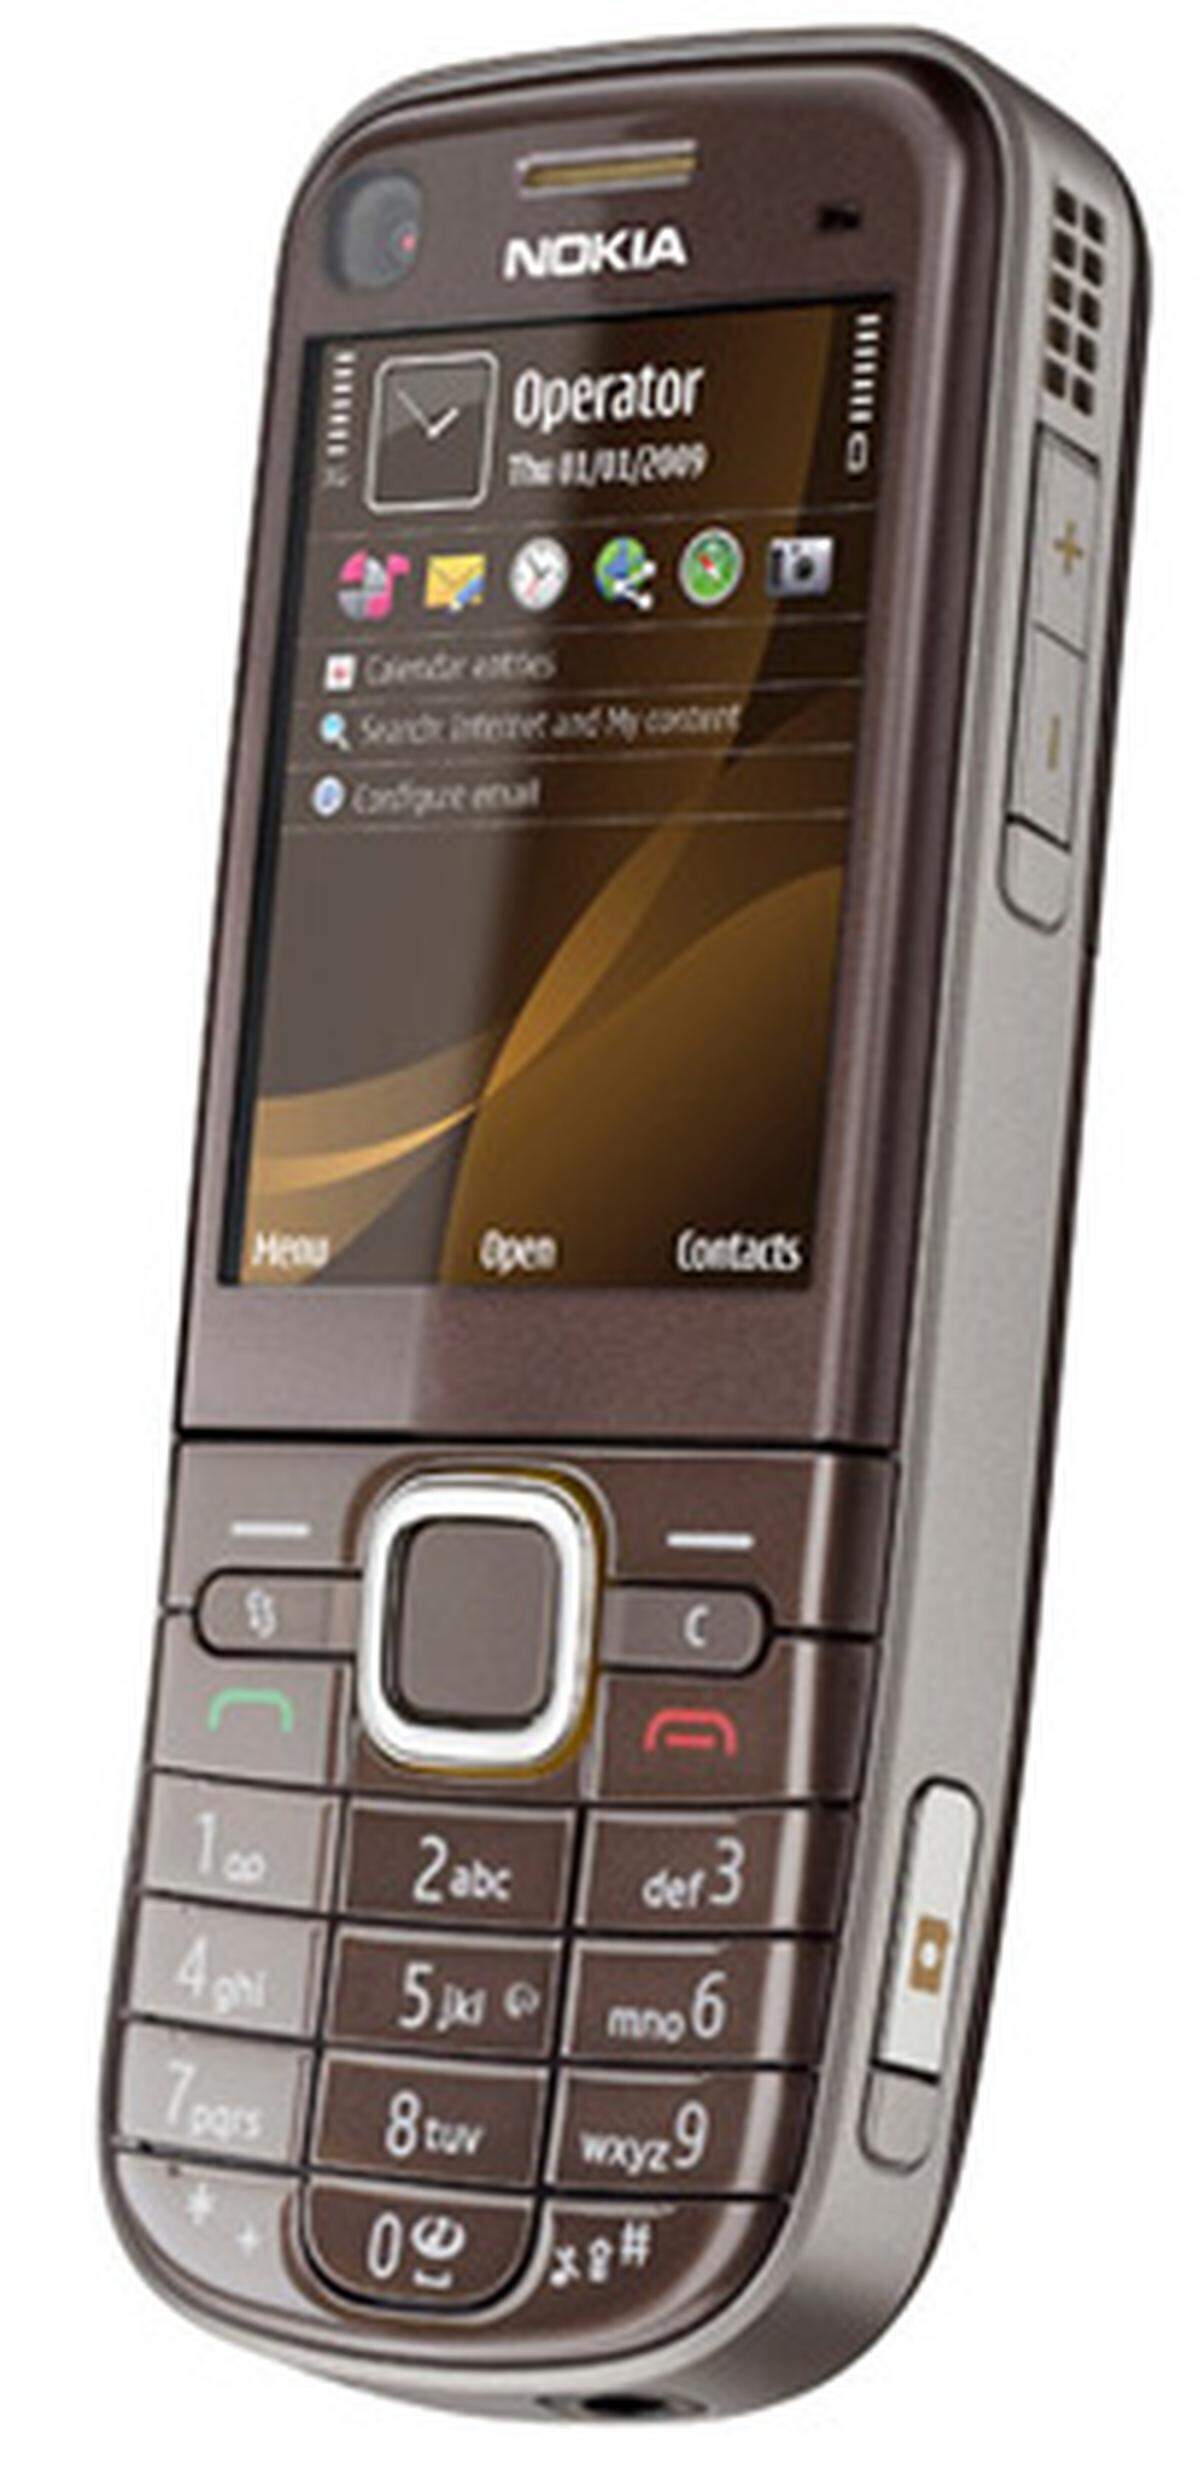 Ein weiterer Vertreter der Navi-Handys. Mit dem 6720 will Nokia vor allem die Sprachführung verbessert haben. Dafür wurde die Geräuschreduzierung optimiert. Unverbindliche Preisempfehlung: 245 Euro.